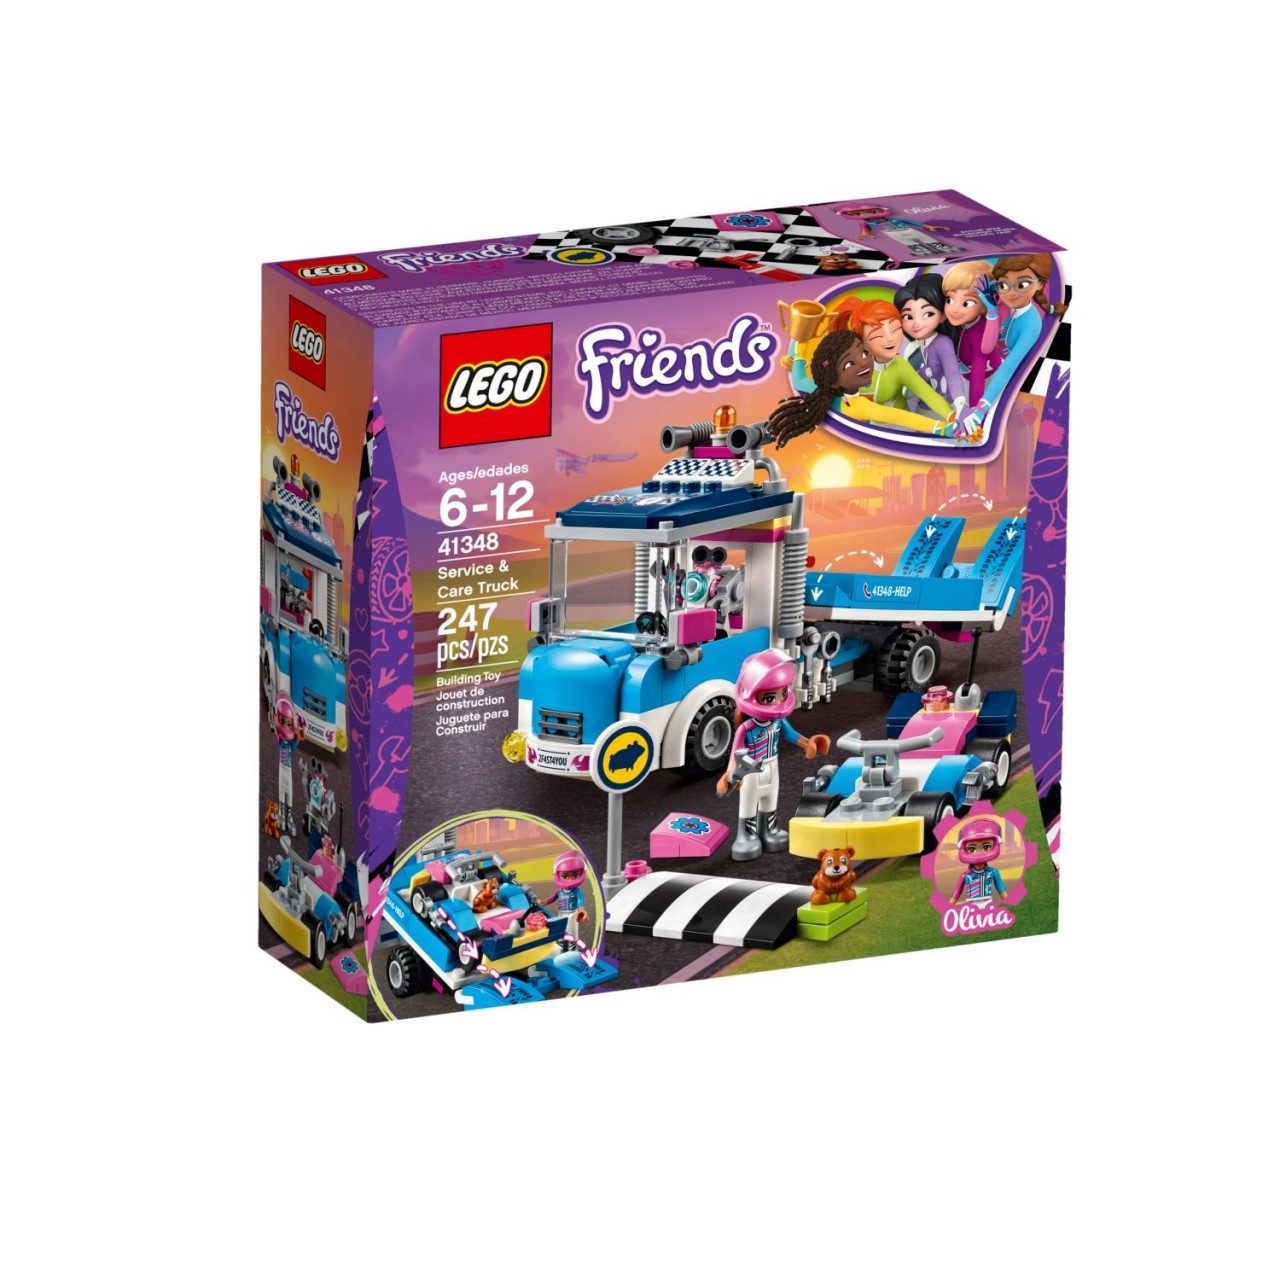 LEGO FRIENDS 41348 Abschleppwagen